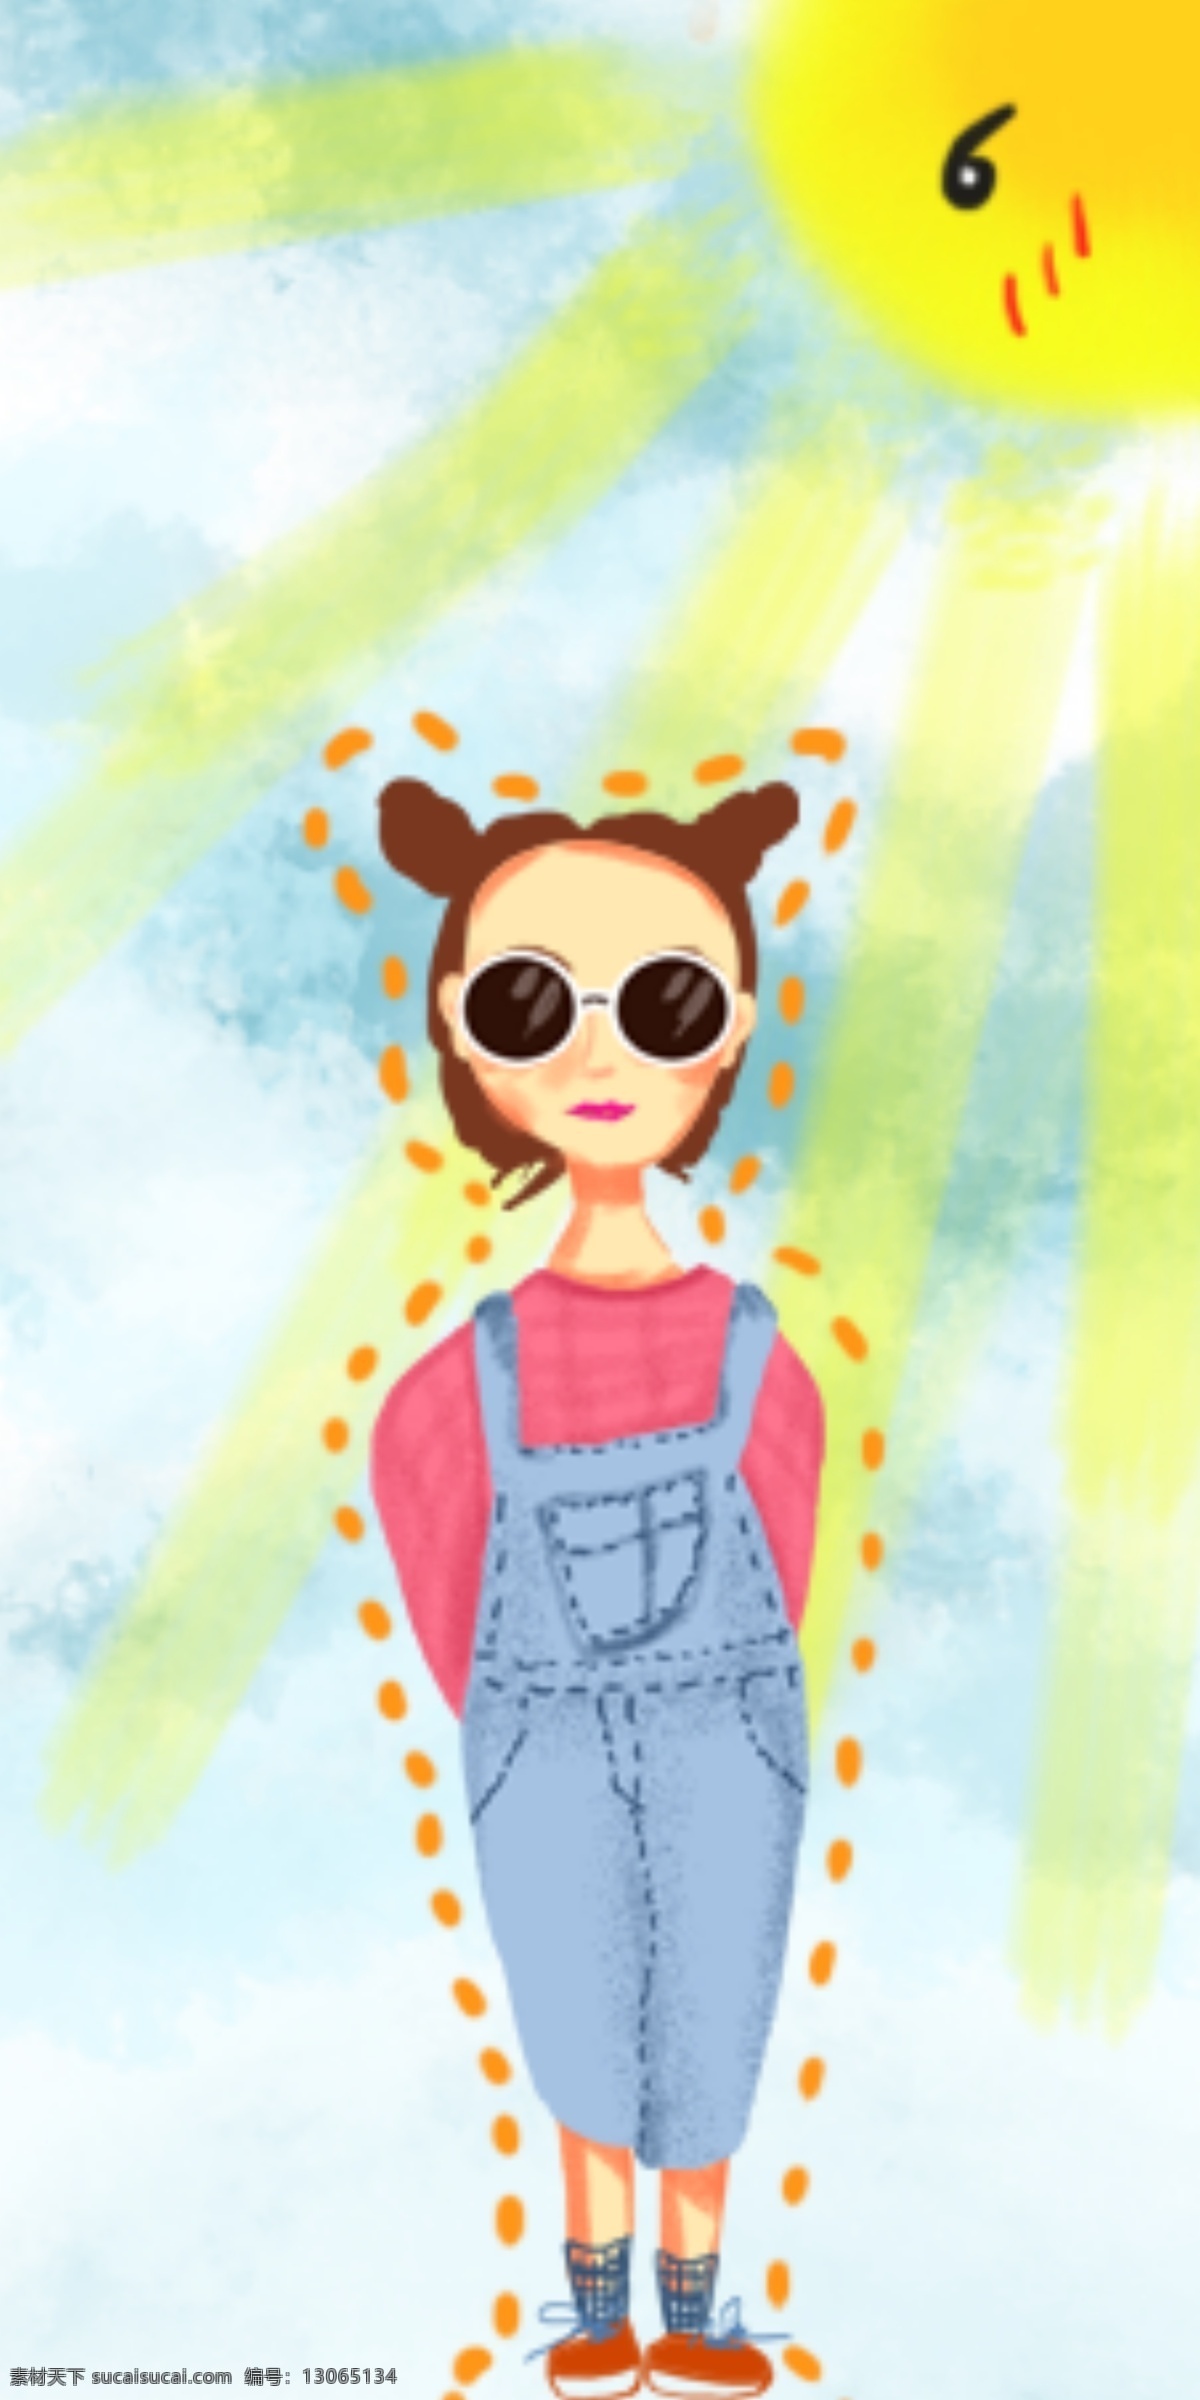 原创 手绘 女孩 手机壳 行人 小女孩 插画 墨镜 阳光 日用品包装